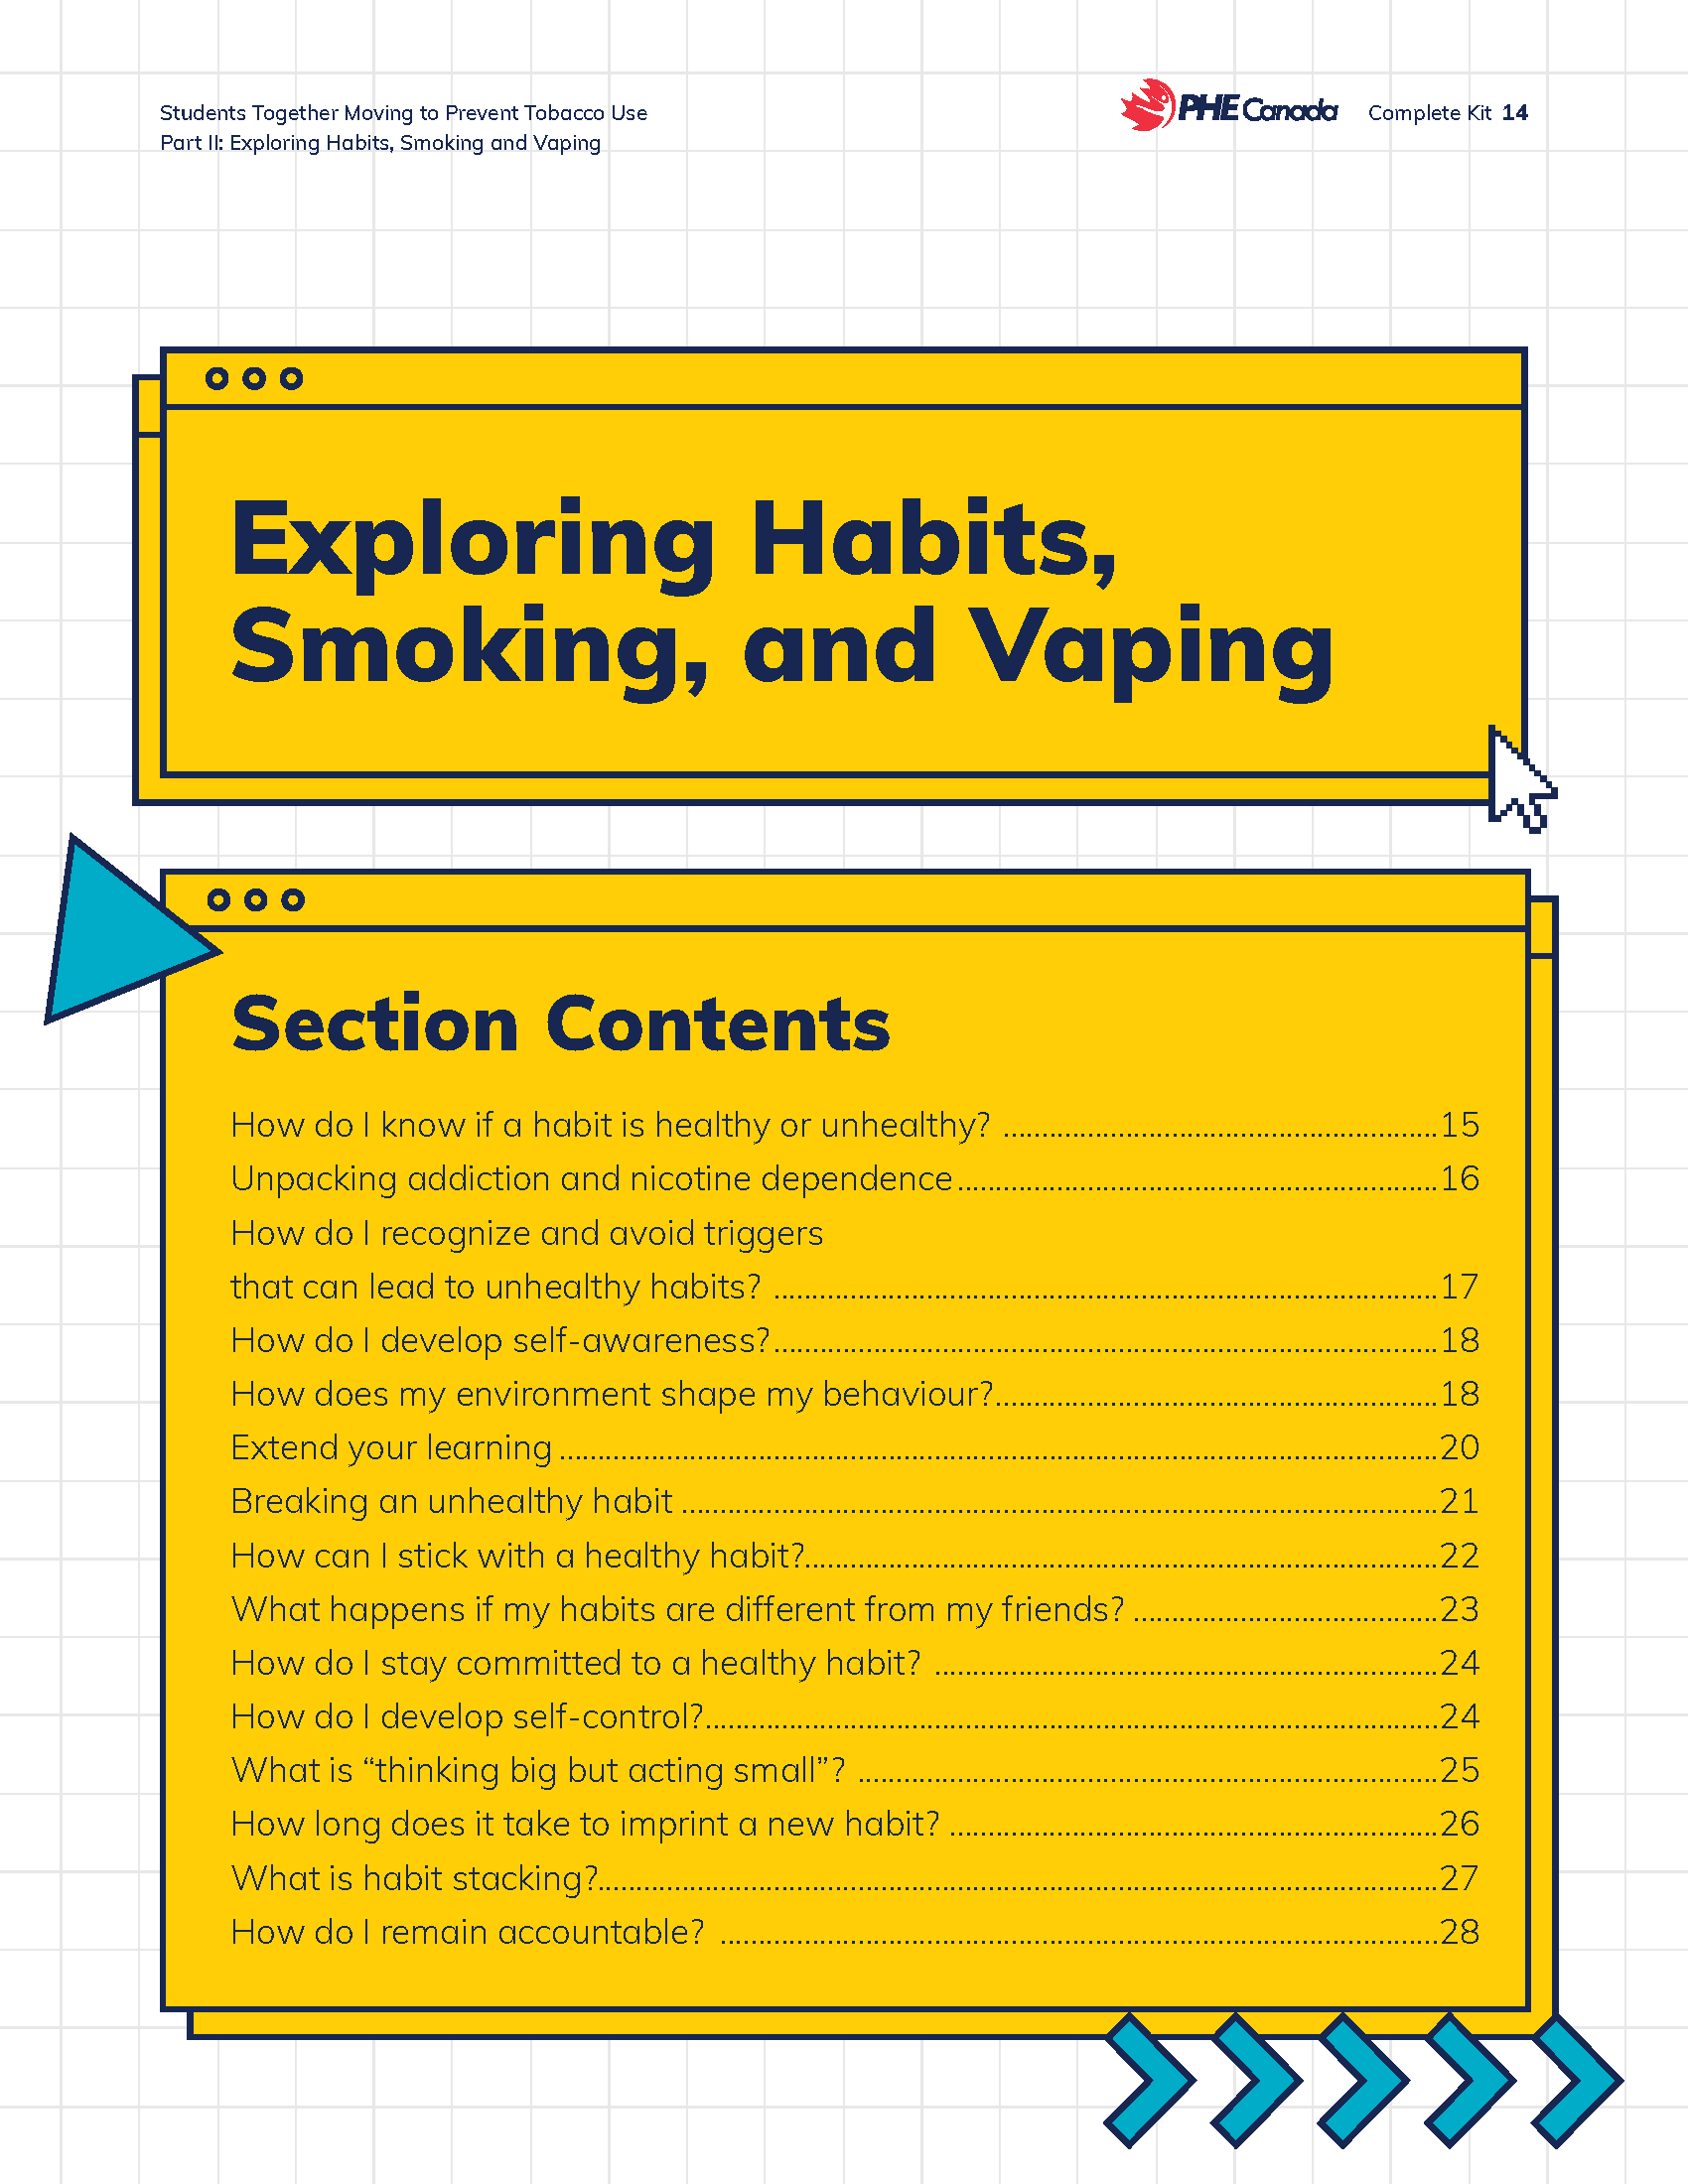 Exploring Habits, Vaping and Smoking